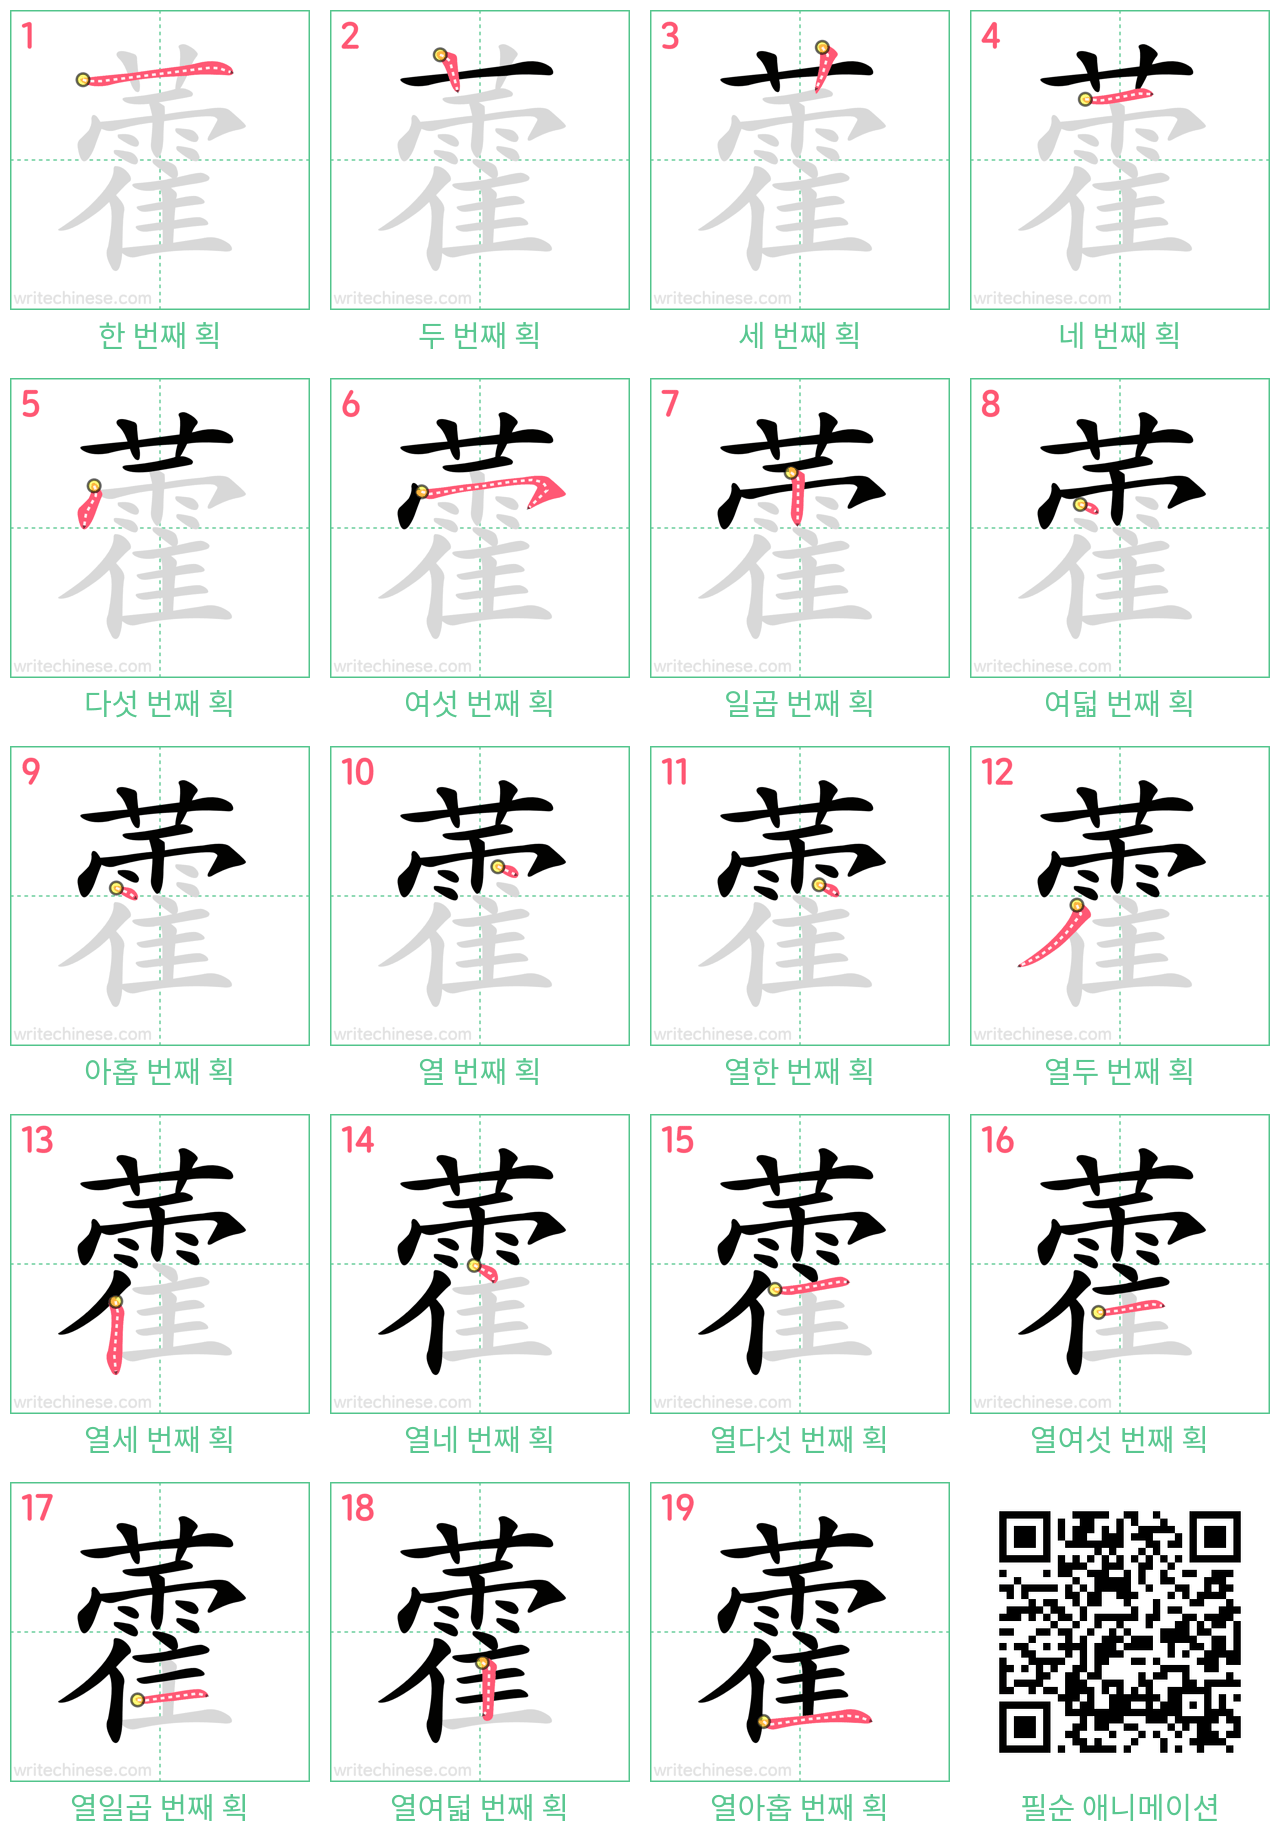 藿 step-by-step stroke order diagrams